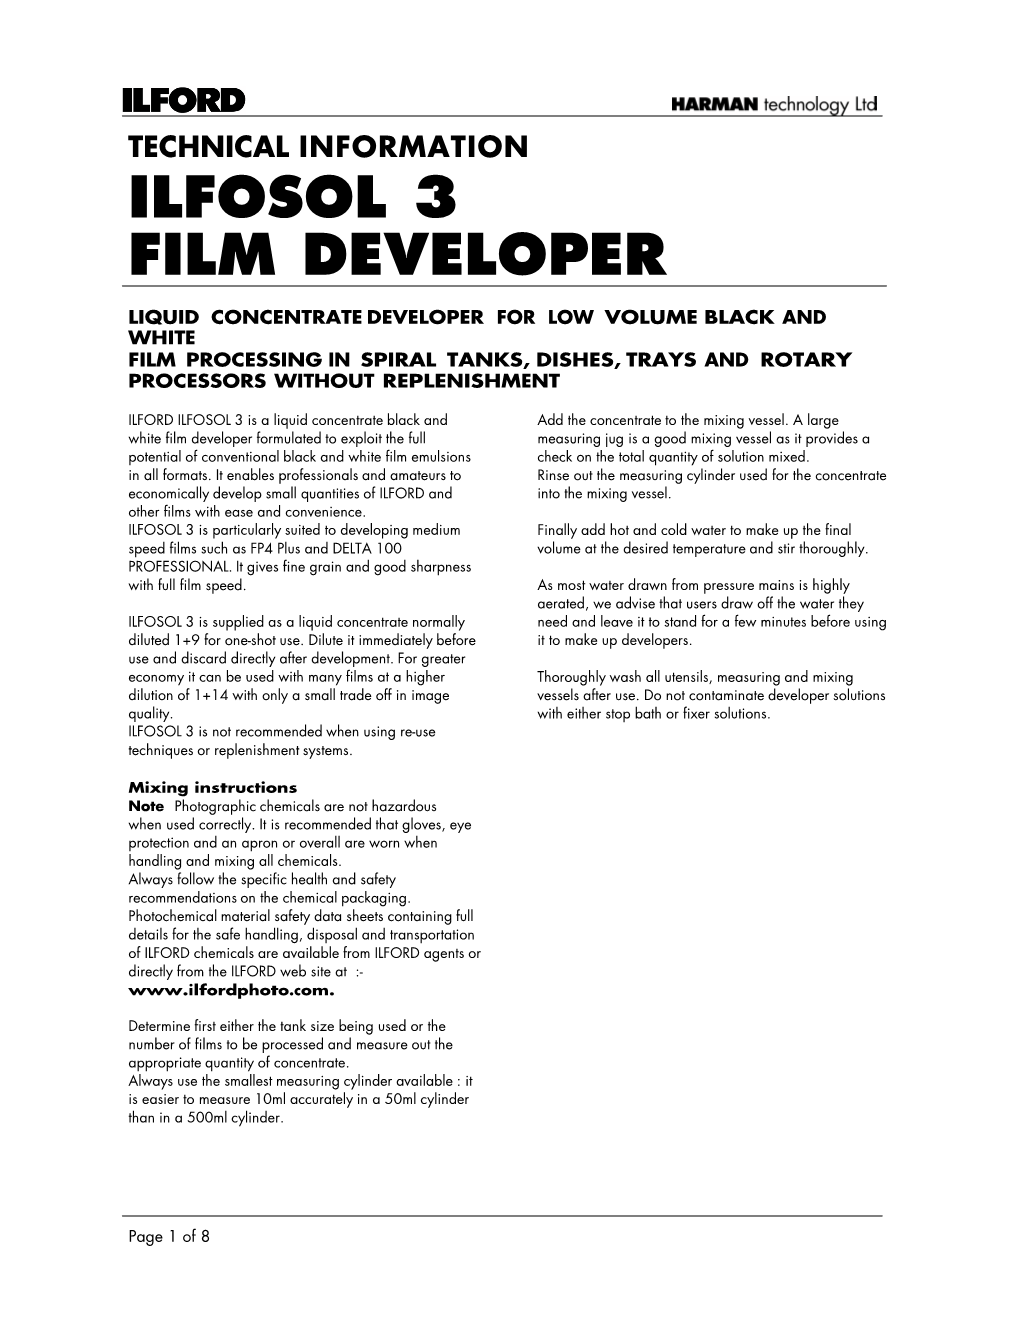 Ilfosol 3 Film Developer